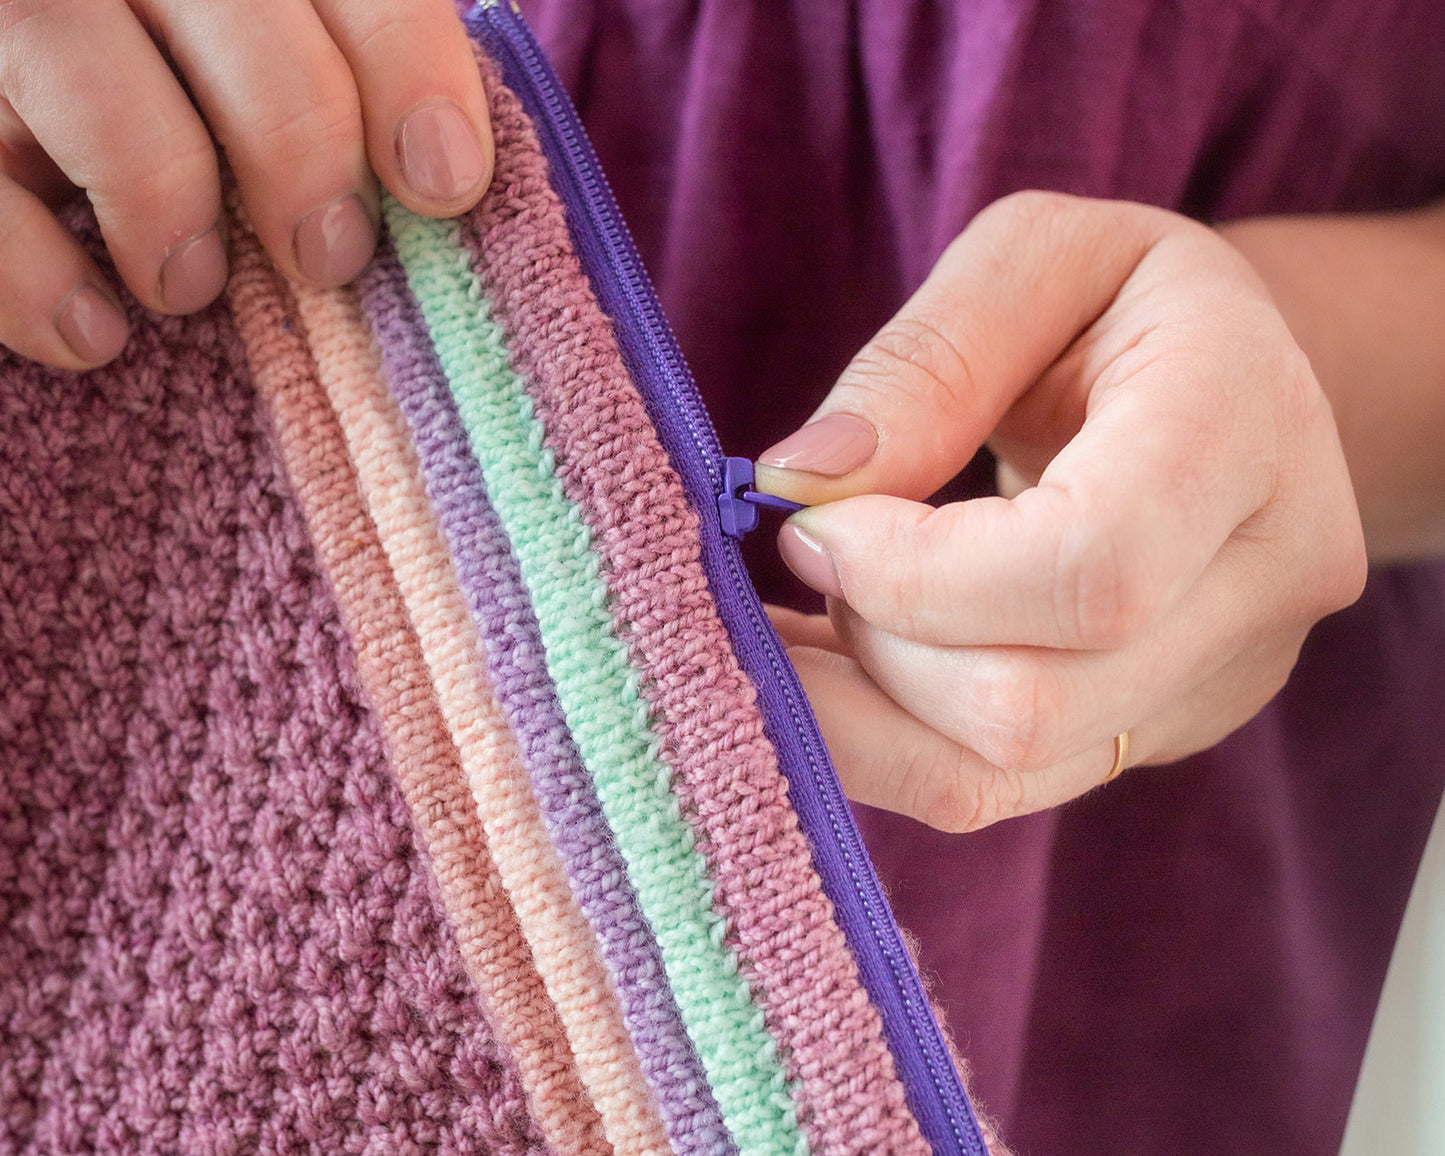 Jen's hands hold a Ziplet pouch, knit with dark pink, green, purple, and orange yarn. It has a purple zipper that Jen is unzipping.